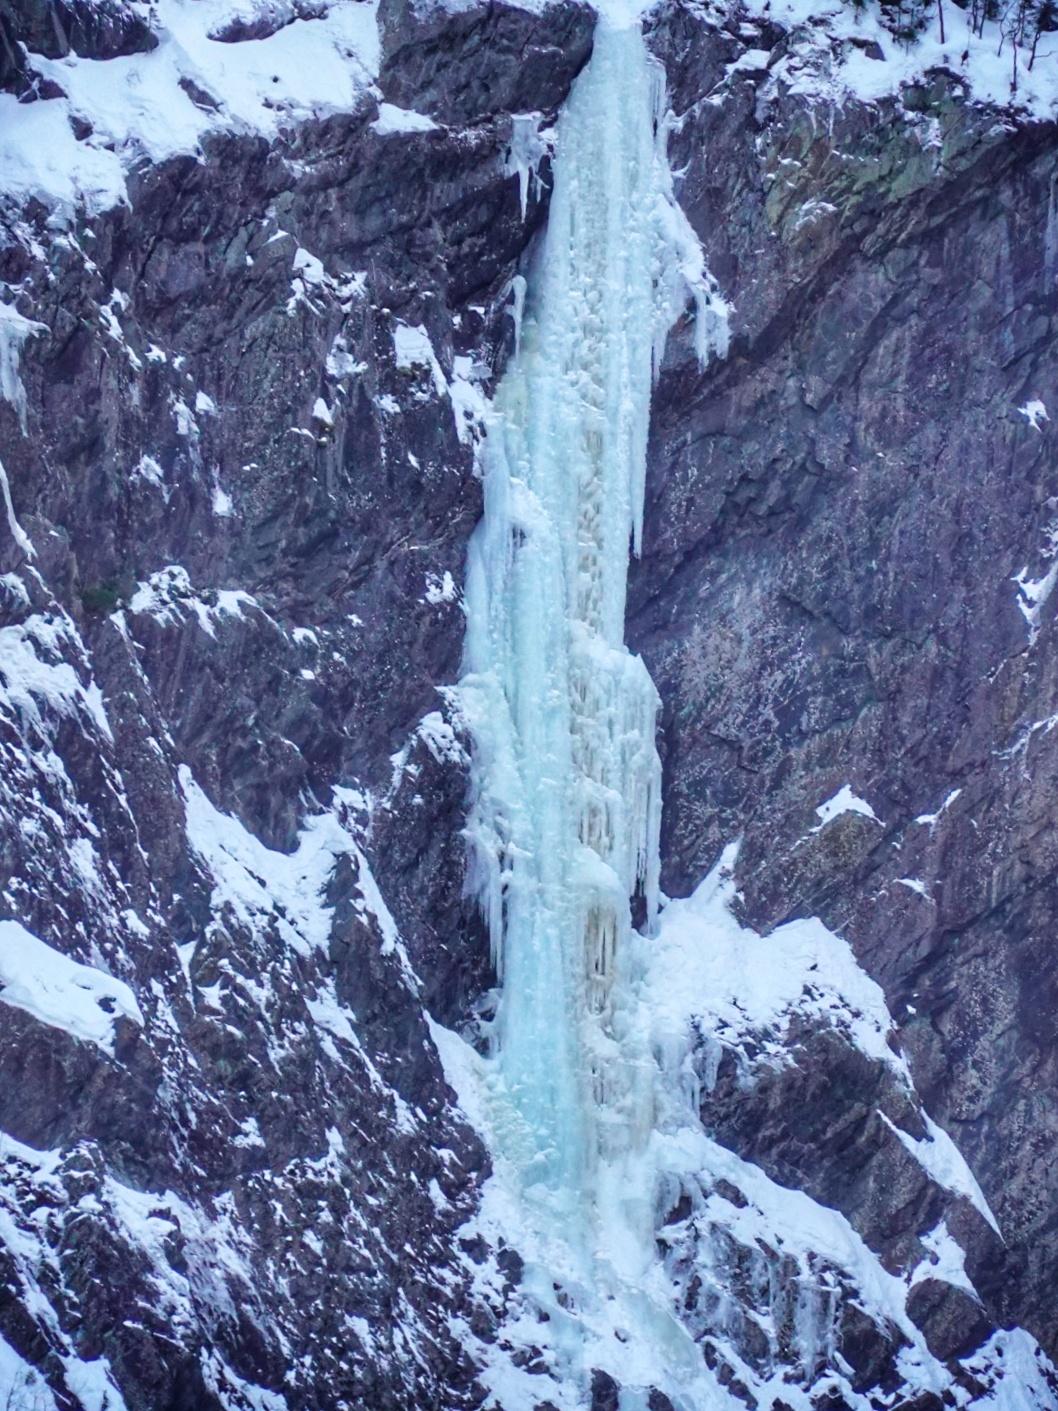 Norvegia cascate di ghiaccio, Alessandro Ferrari, Giovanni Zaccaria